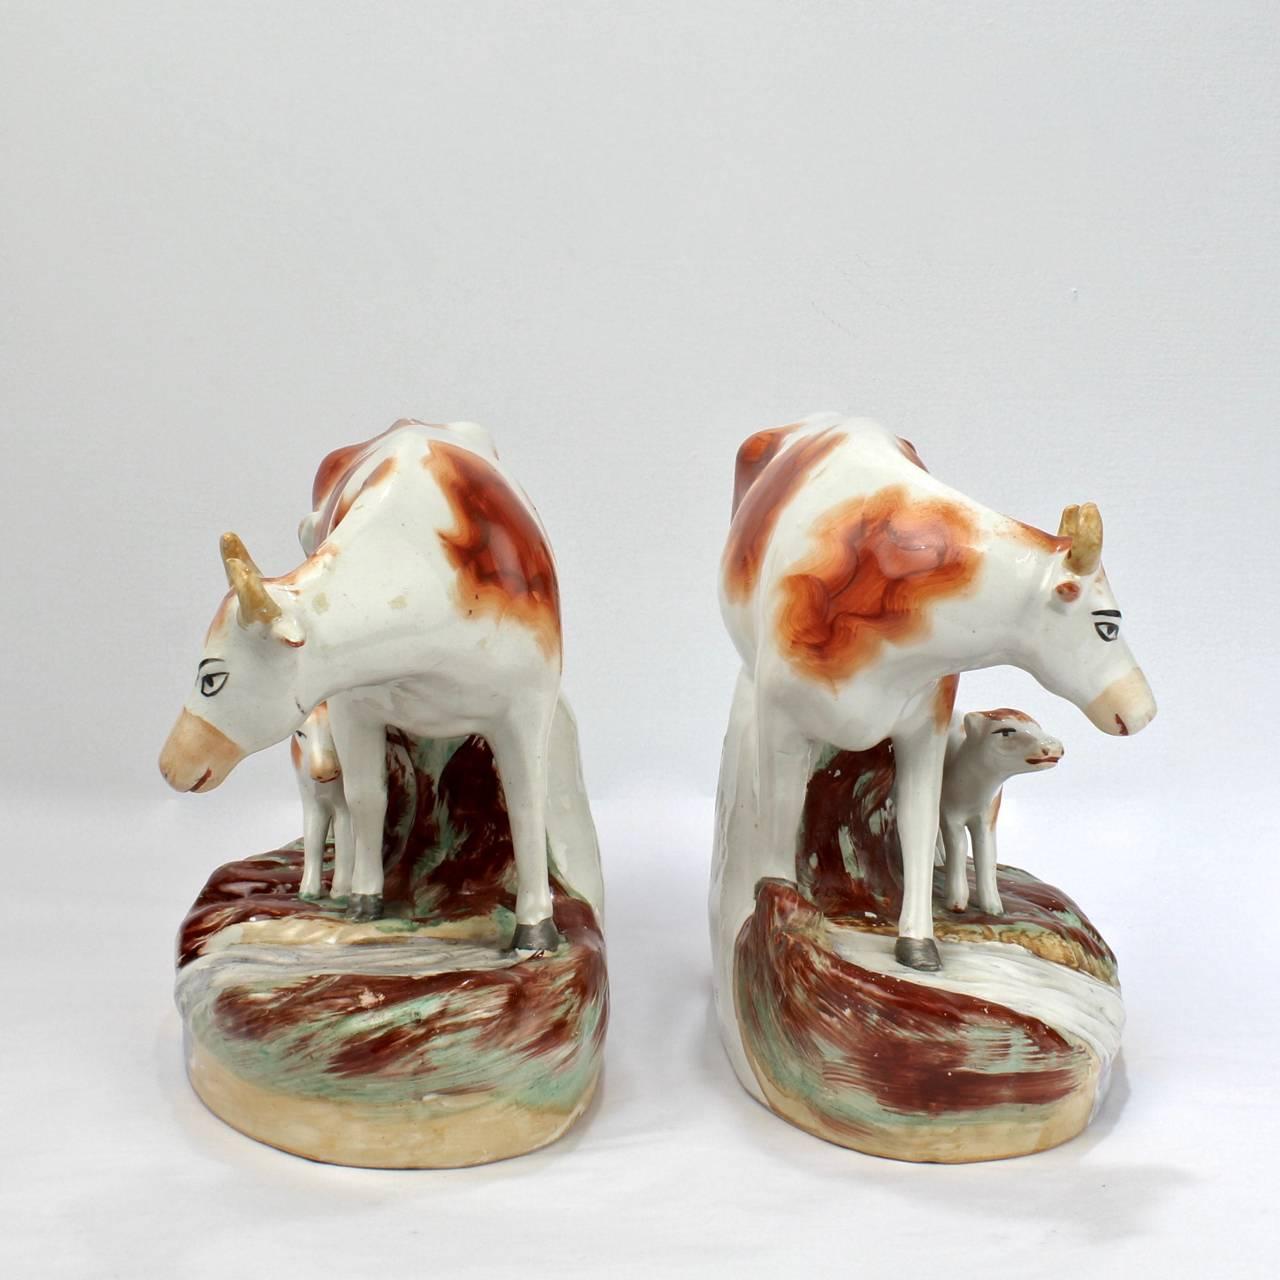 Une belle paire de figurines anciennes en poterie anglaise Staffordshire.

Chacune des paires complémentaires représente une vache avec son veau au bord d'un ruisseau.

Avec une légère usure de la peinture.

Longueur du plus grand : environ 10